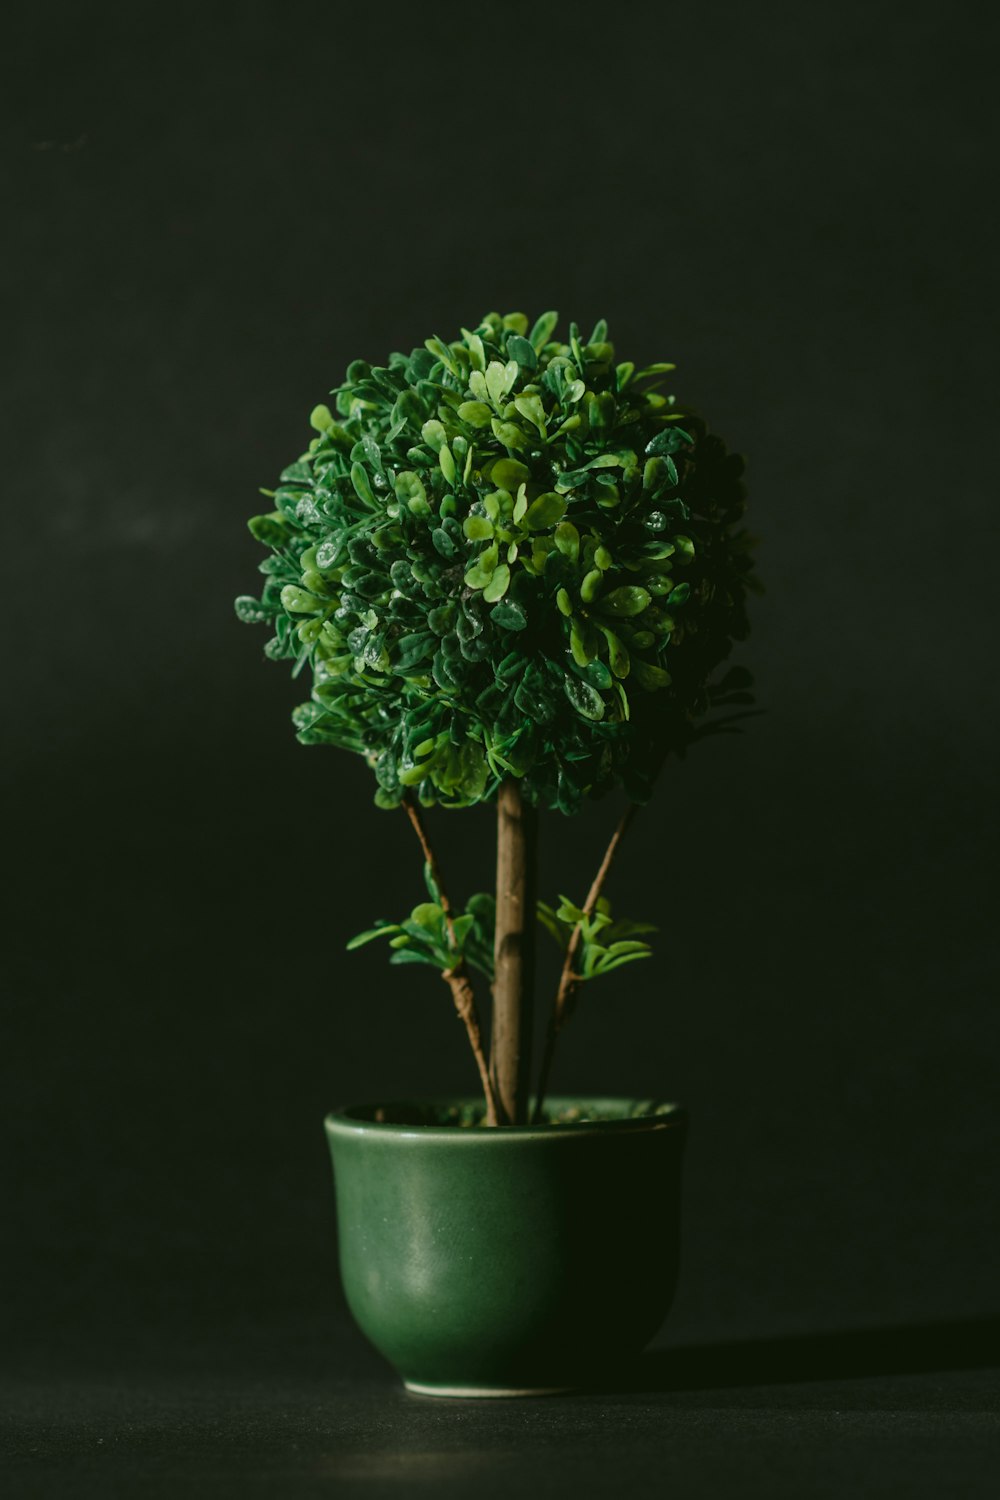 grünblättriger Bonsaibaum vor schwarzem Hintergrund